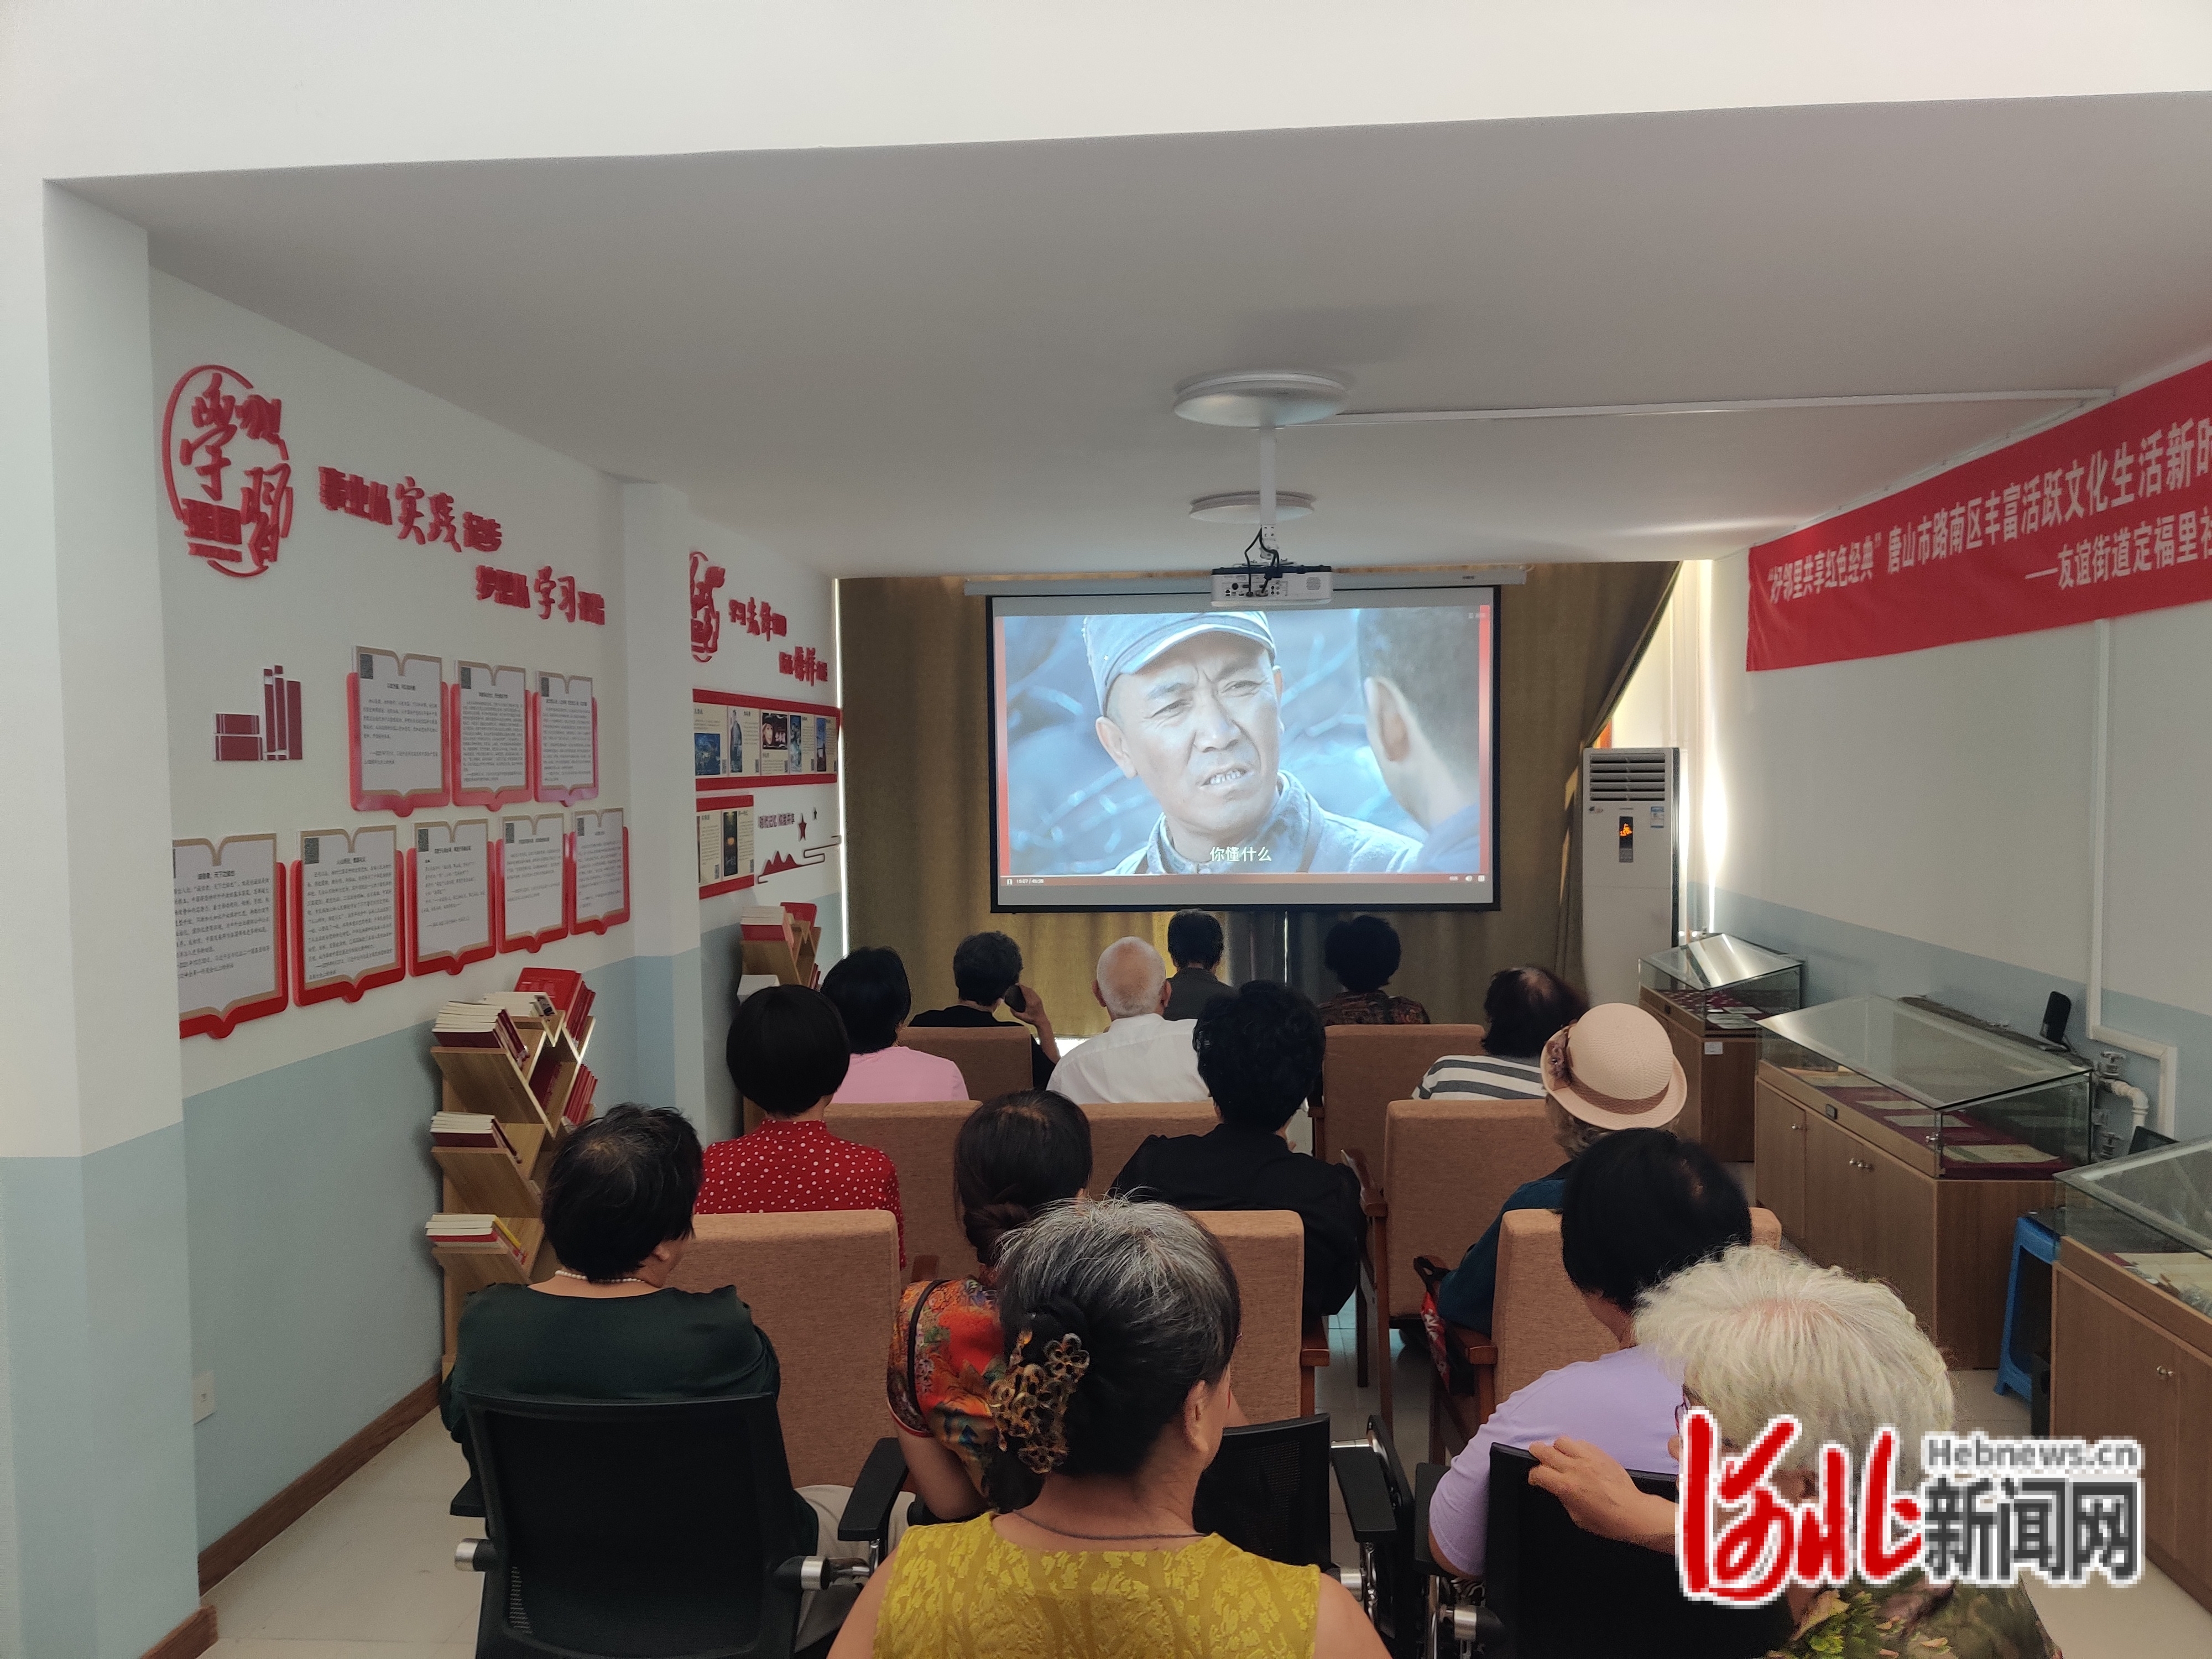 居民正看观看红色经典电影。河北日报通讯员张文上摄